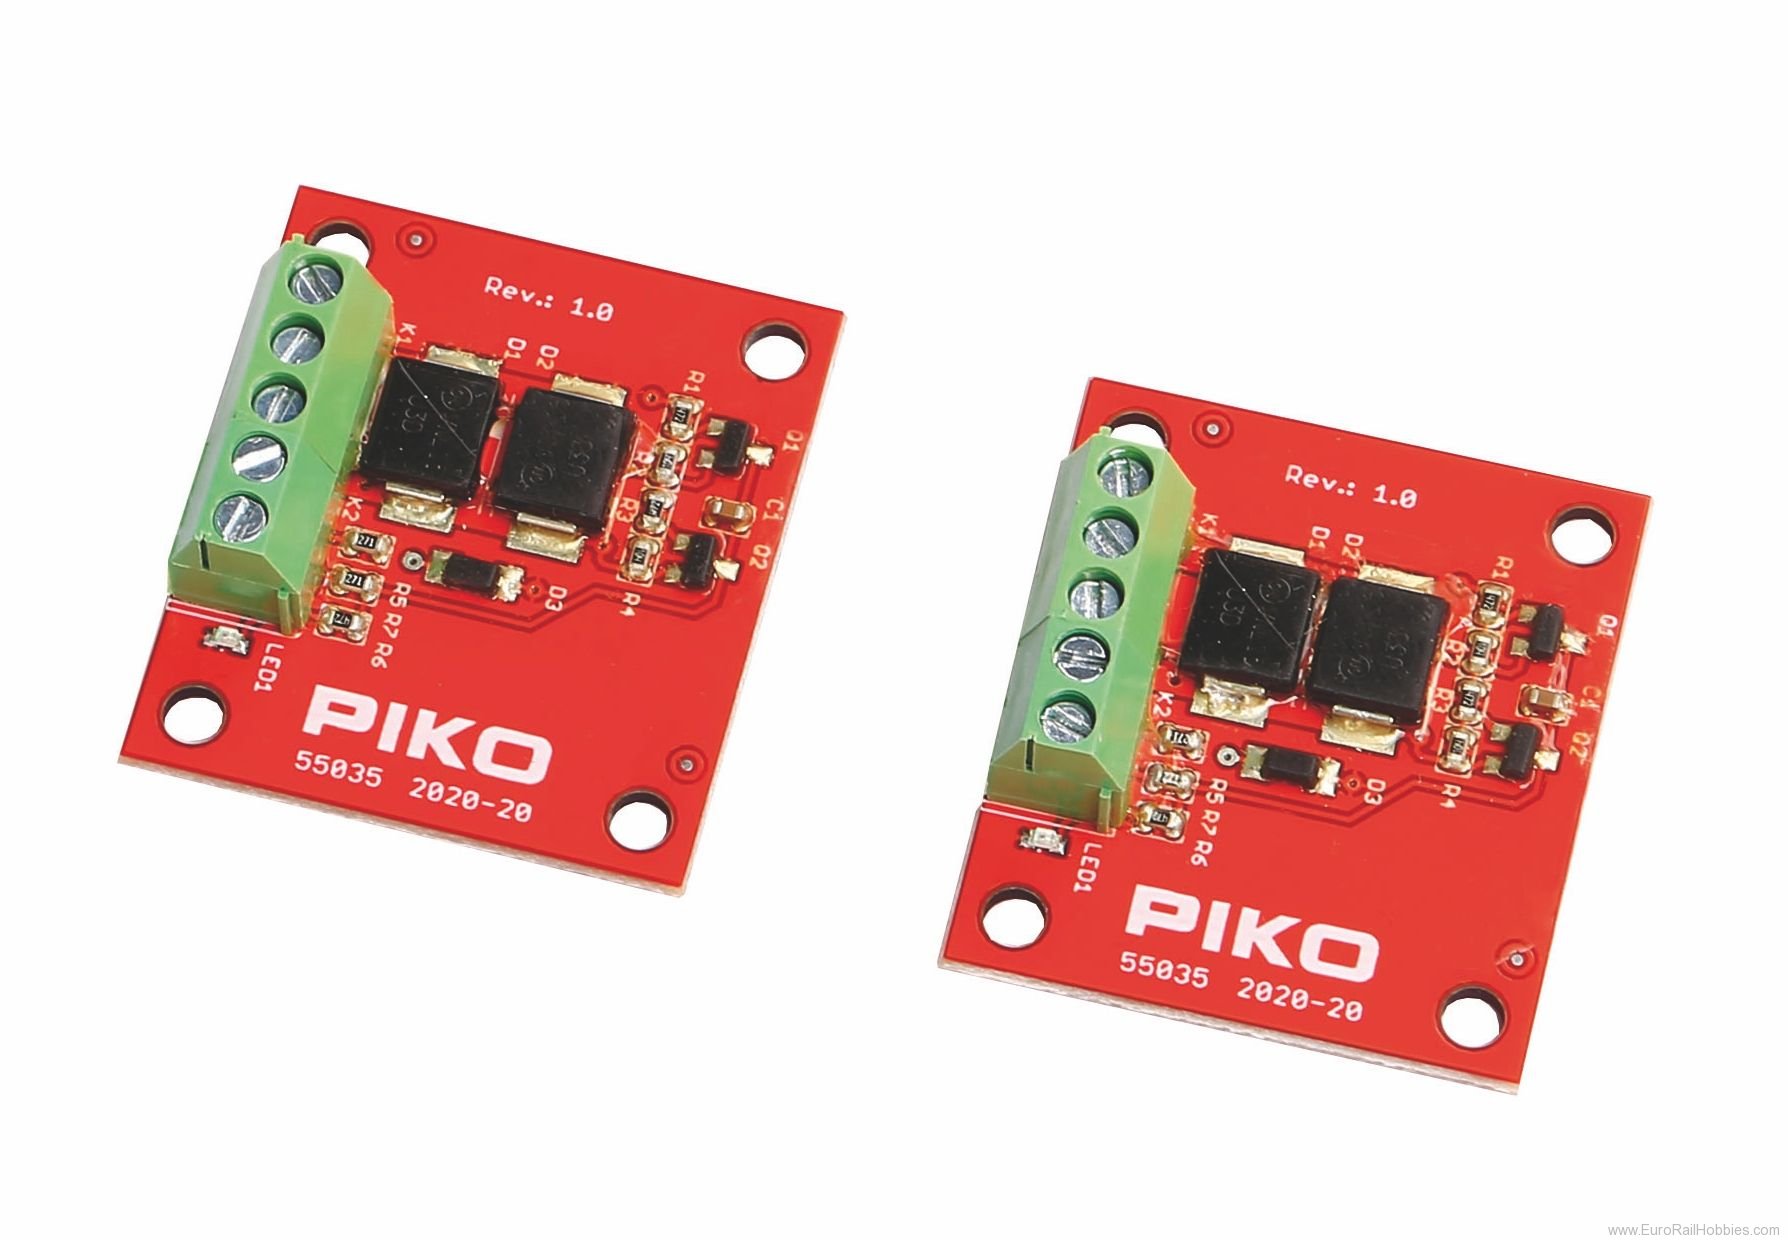 Piko 55035 PIKO feedback sensor (2 pieces)